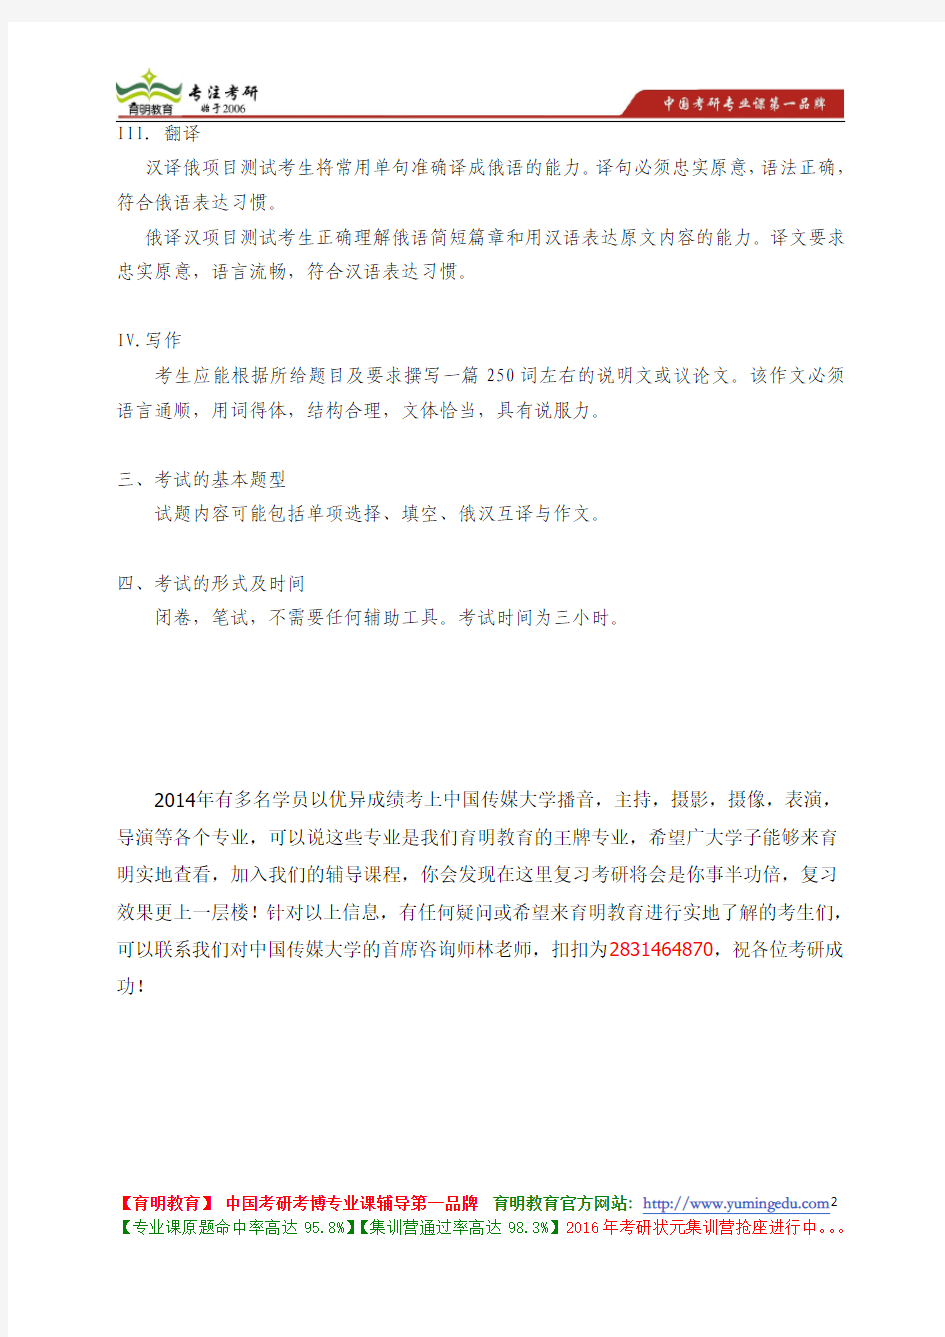 中国传媒大学 245《二外俄语》考试大纲 考试题型 考试内容